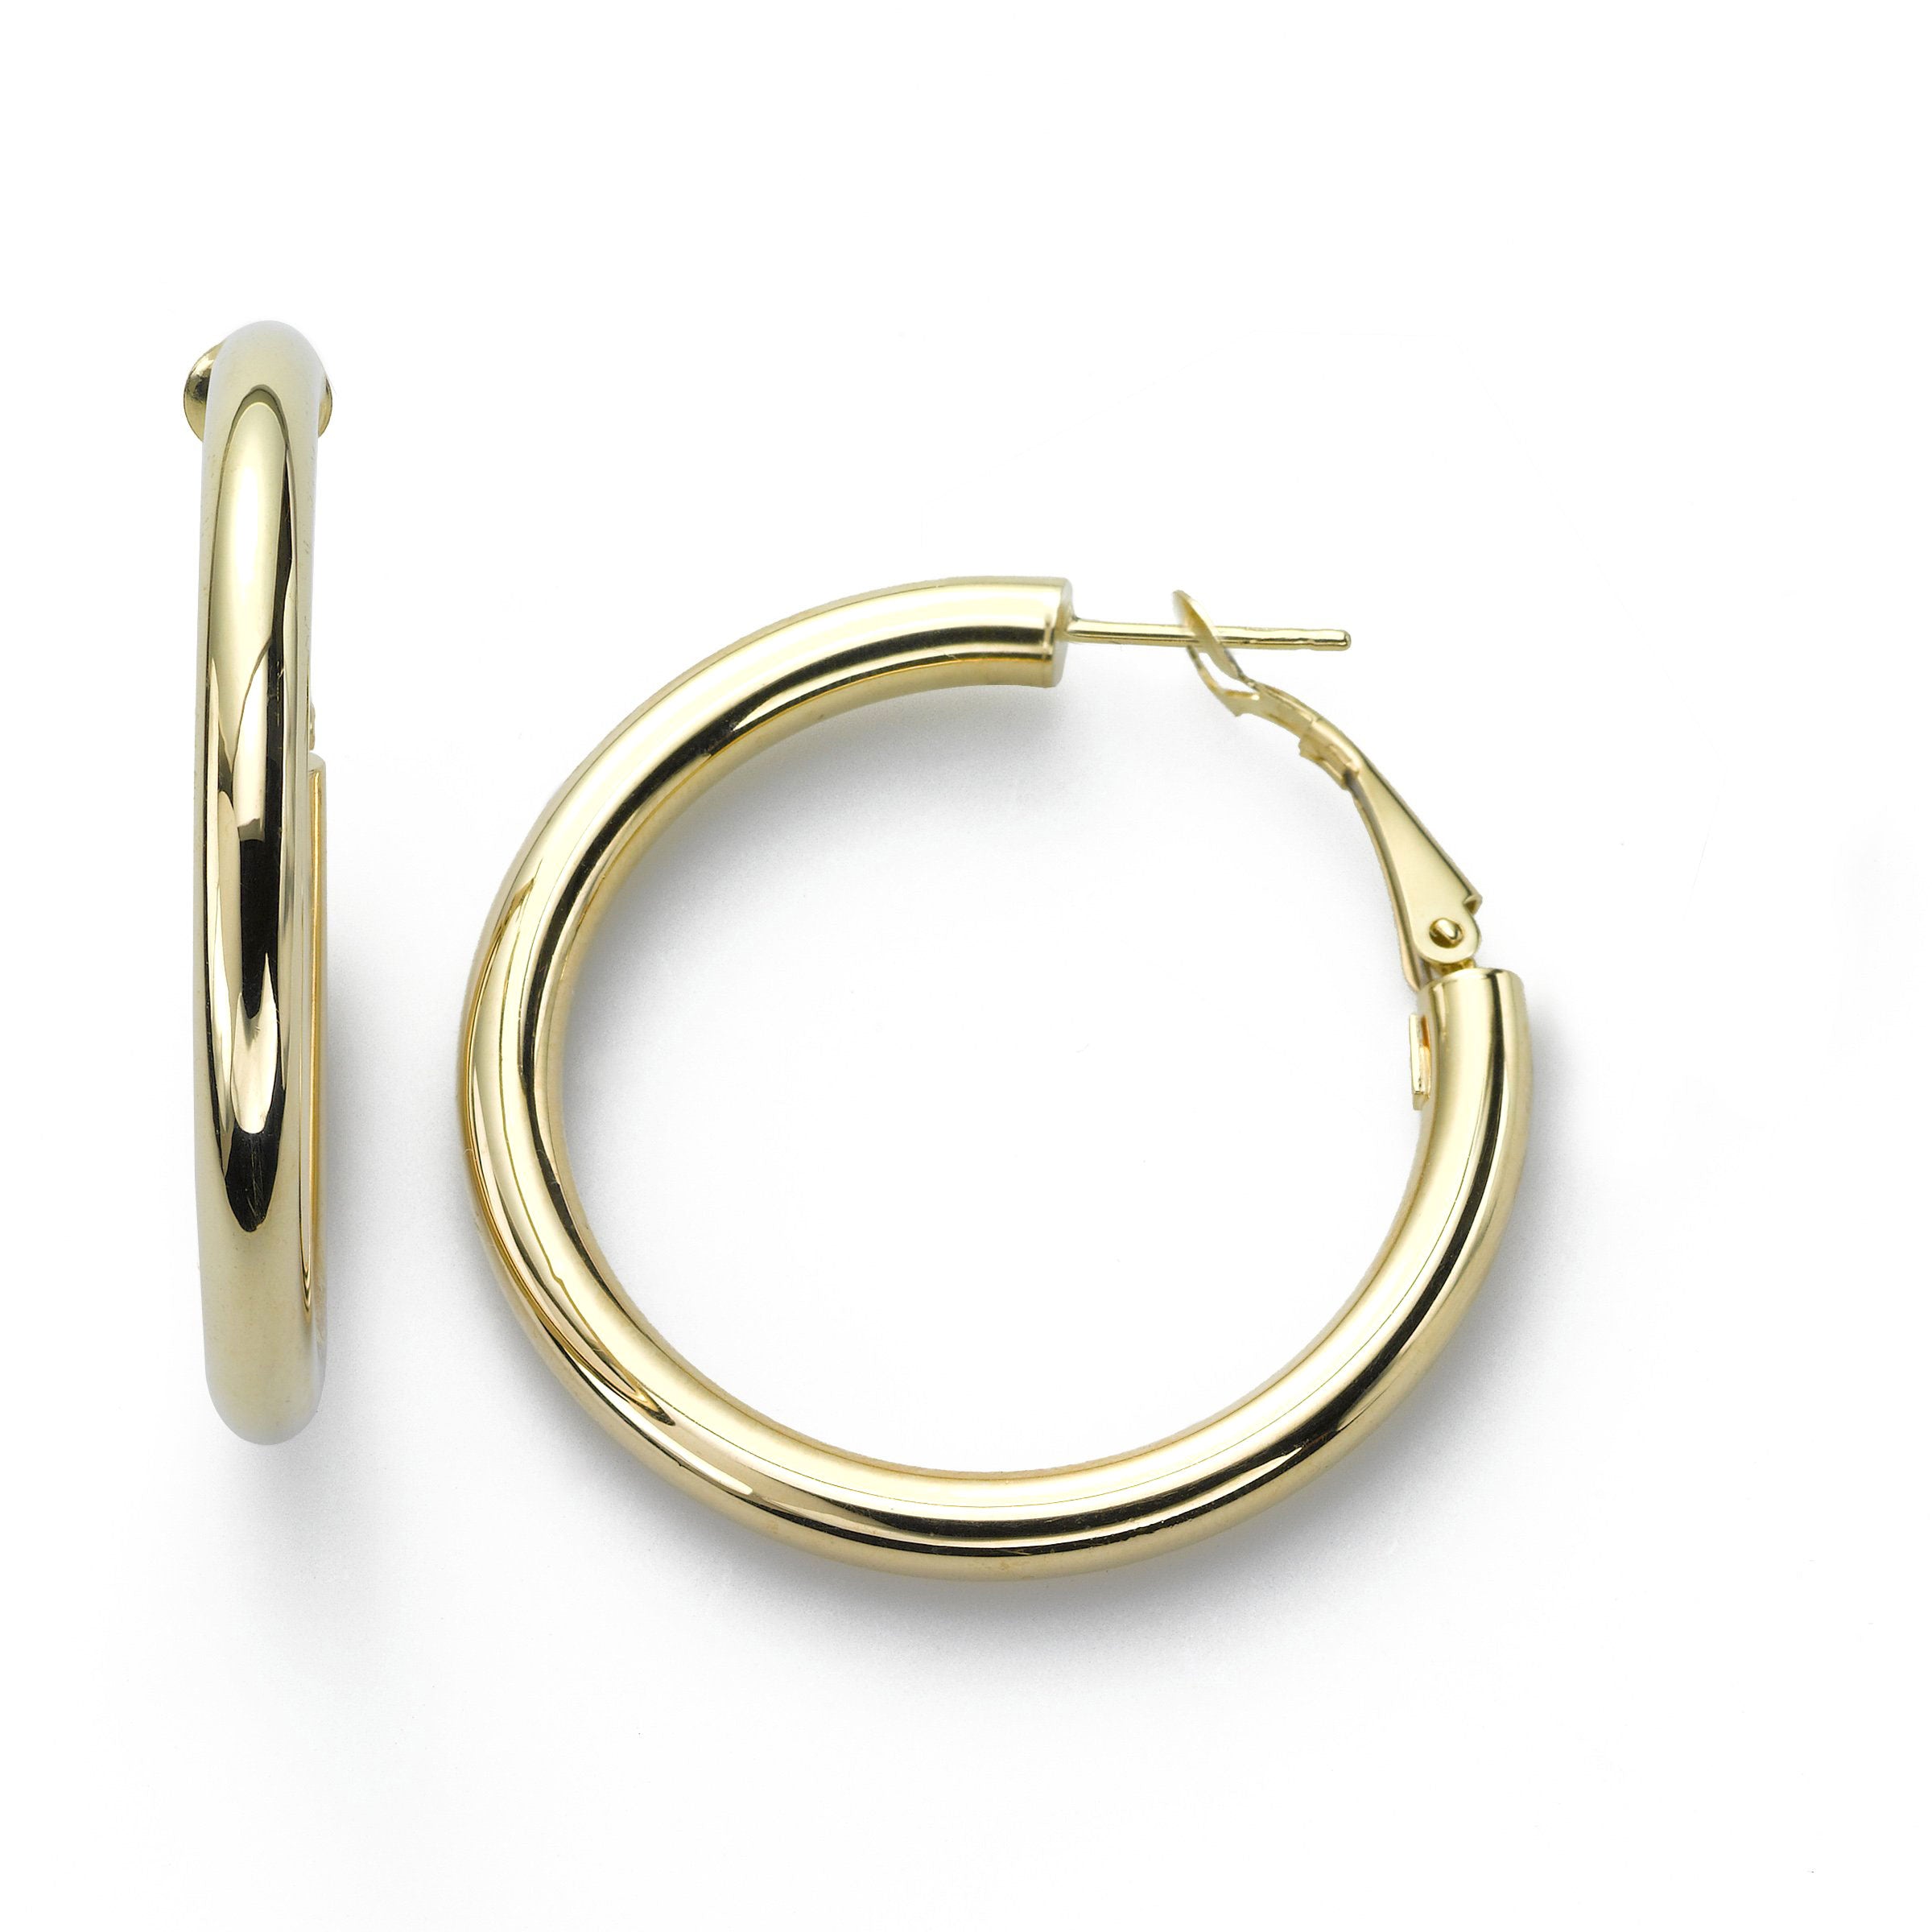 1 inch 14kt yellow gold hoop earrings  Freedman Jewelers